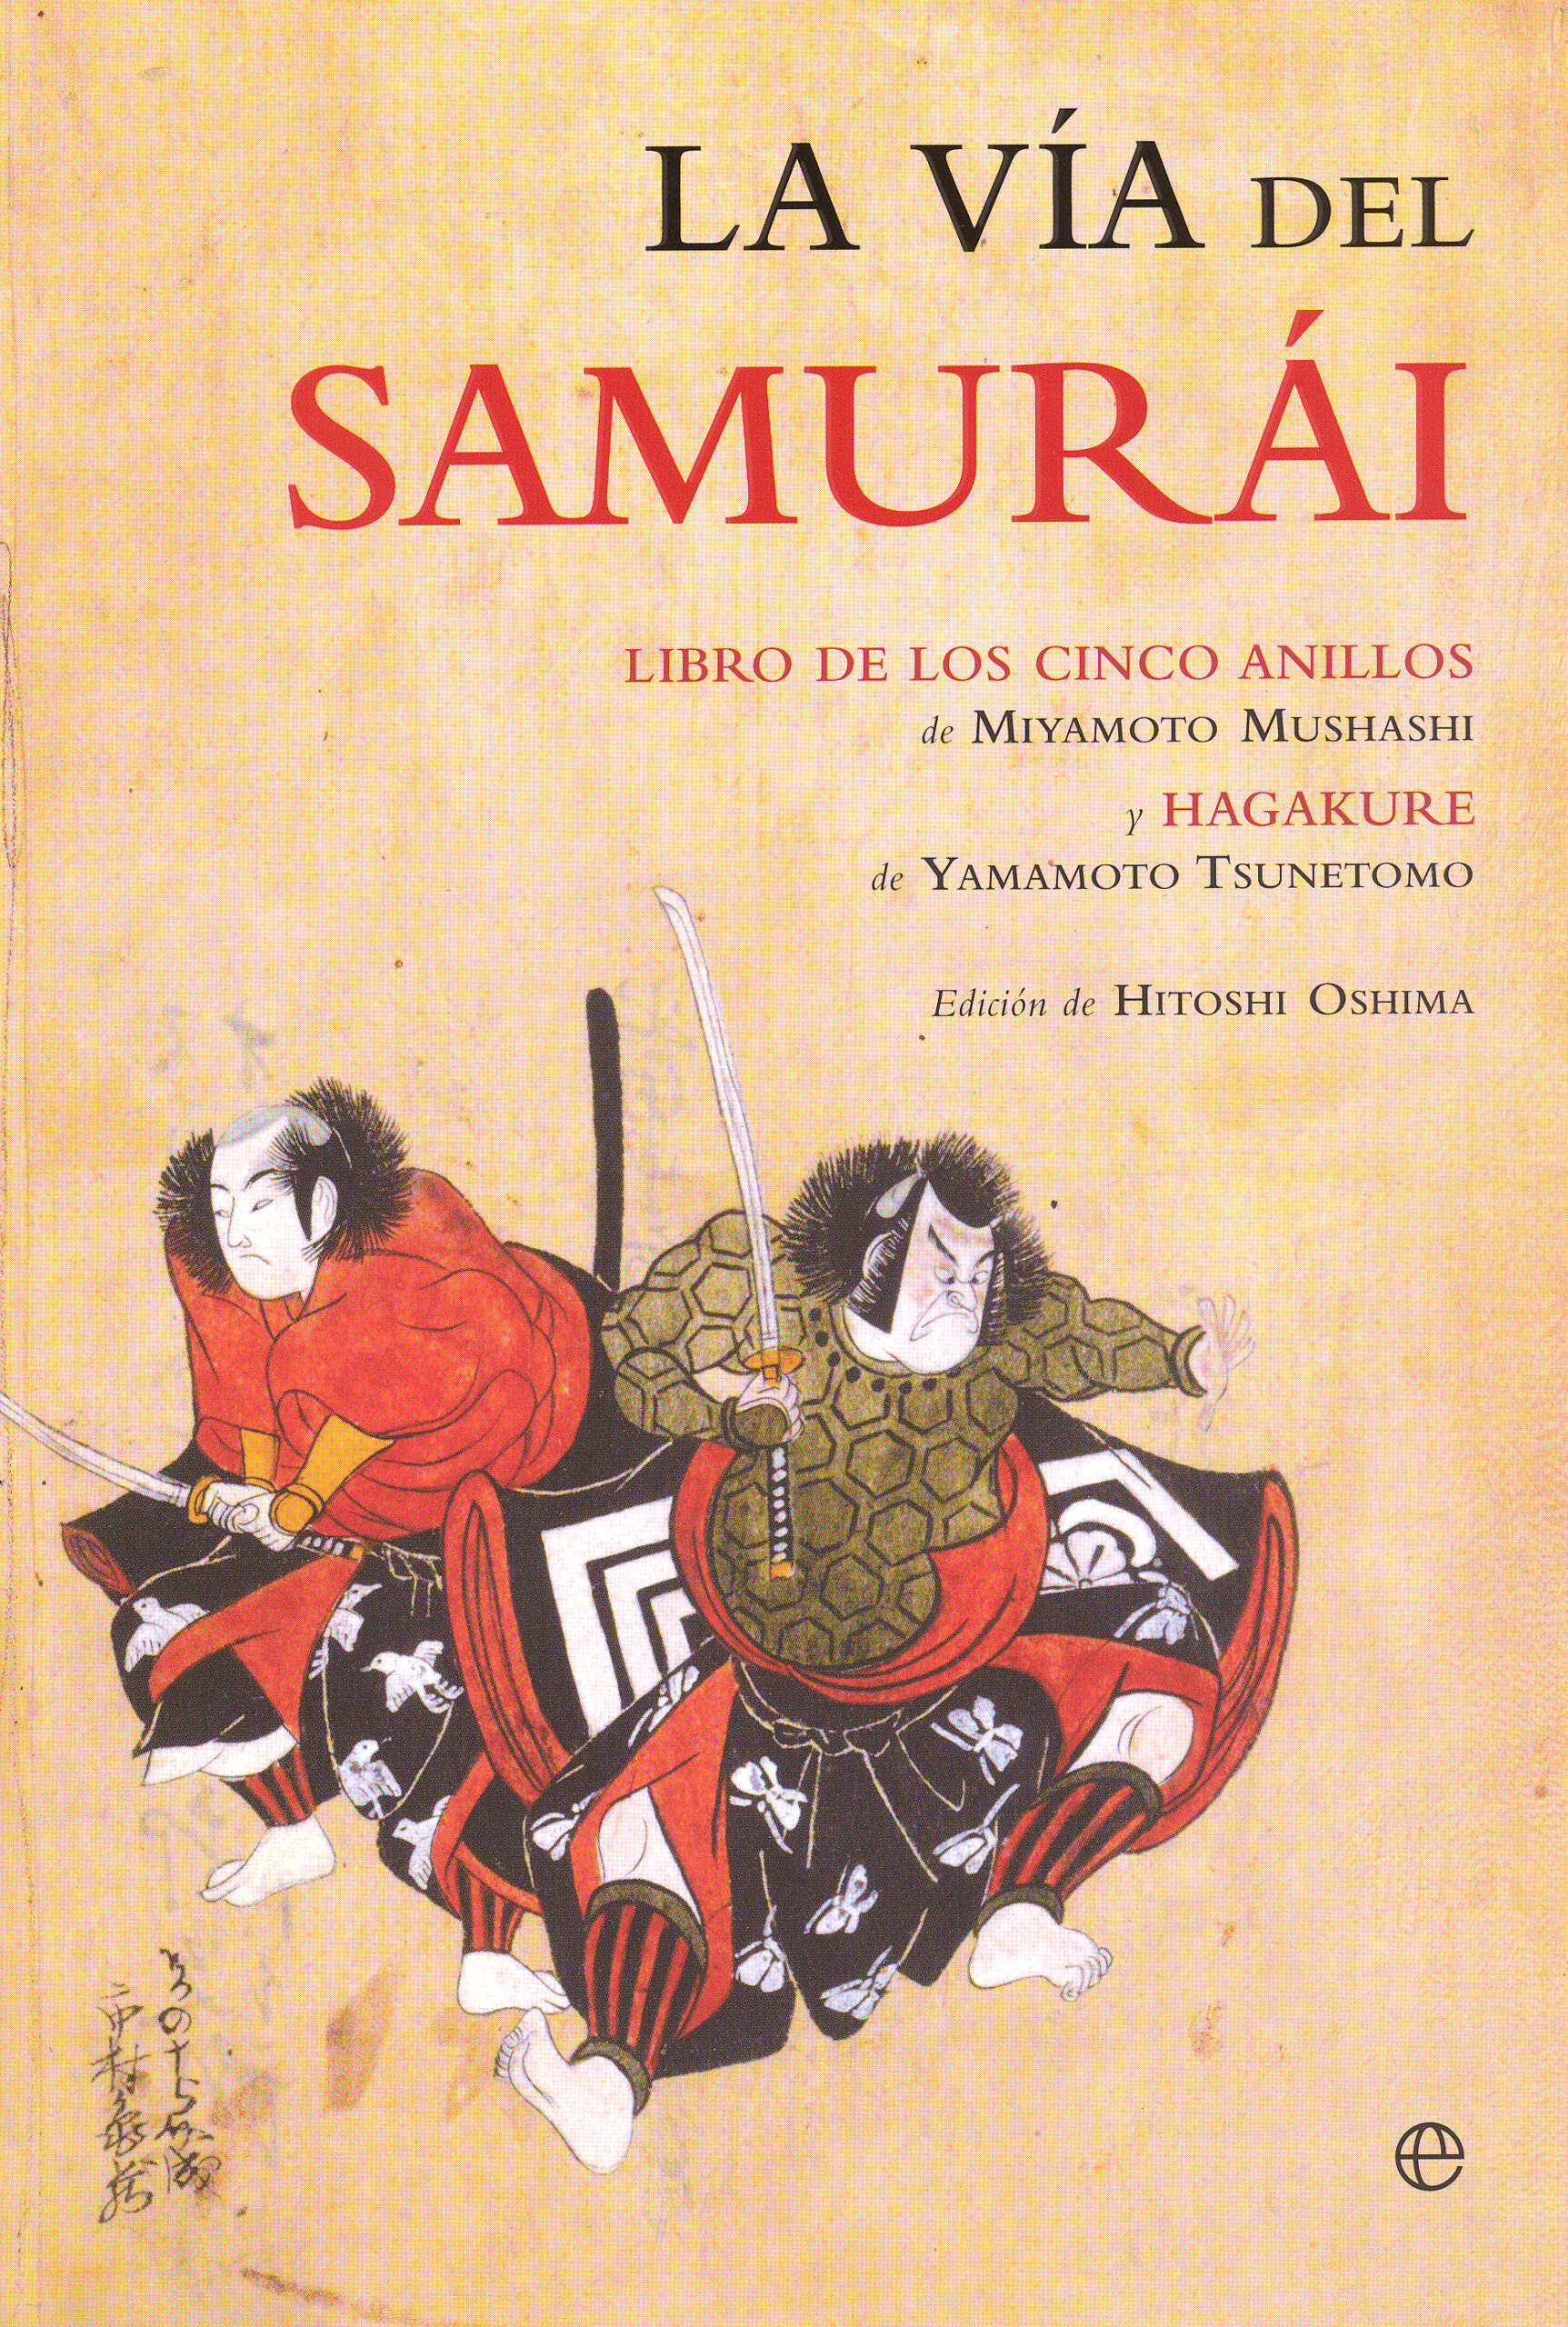 La vía del samurái